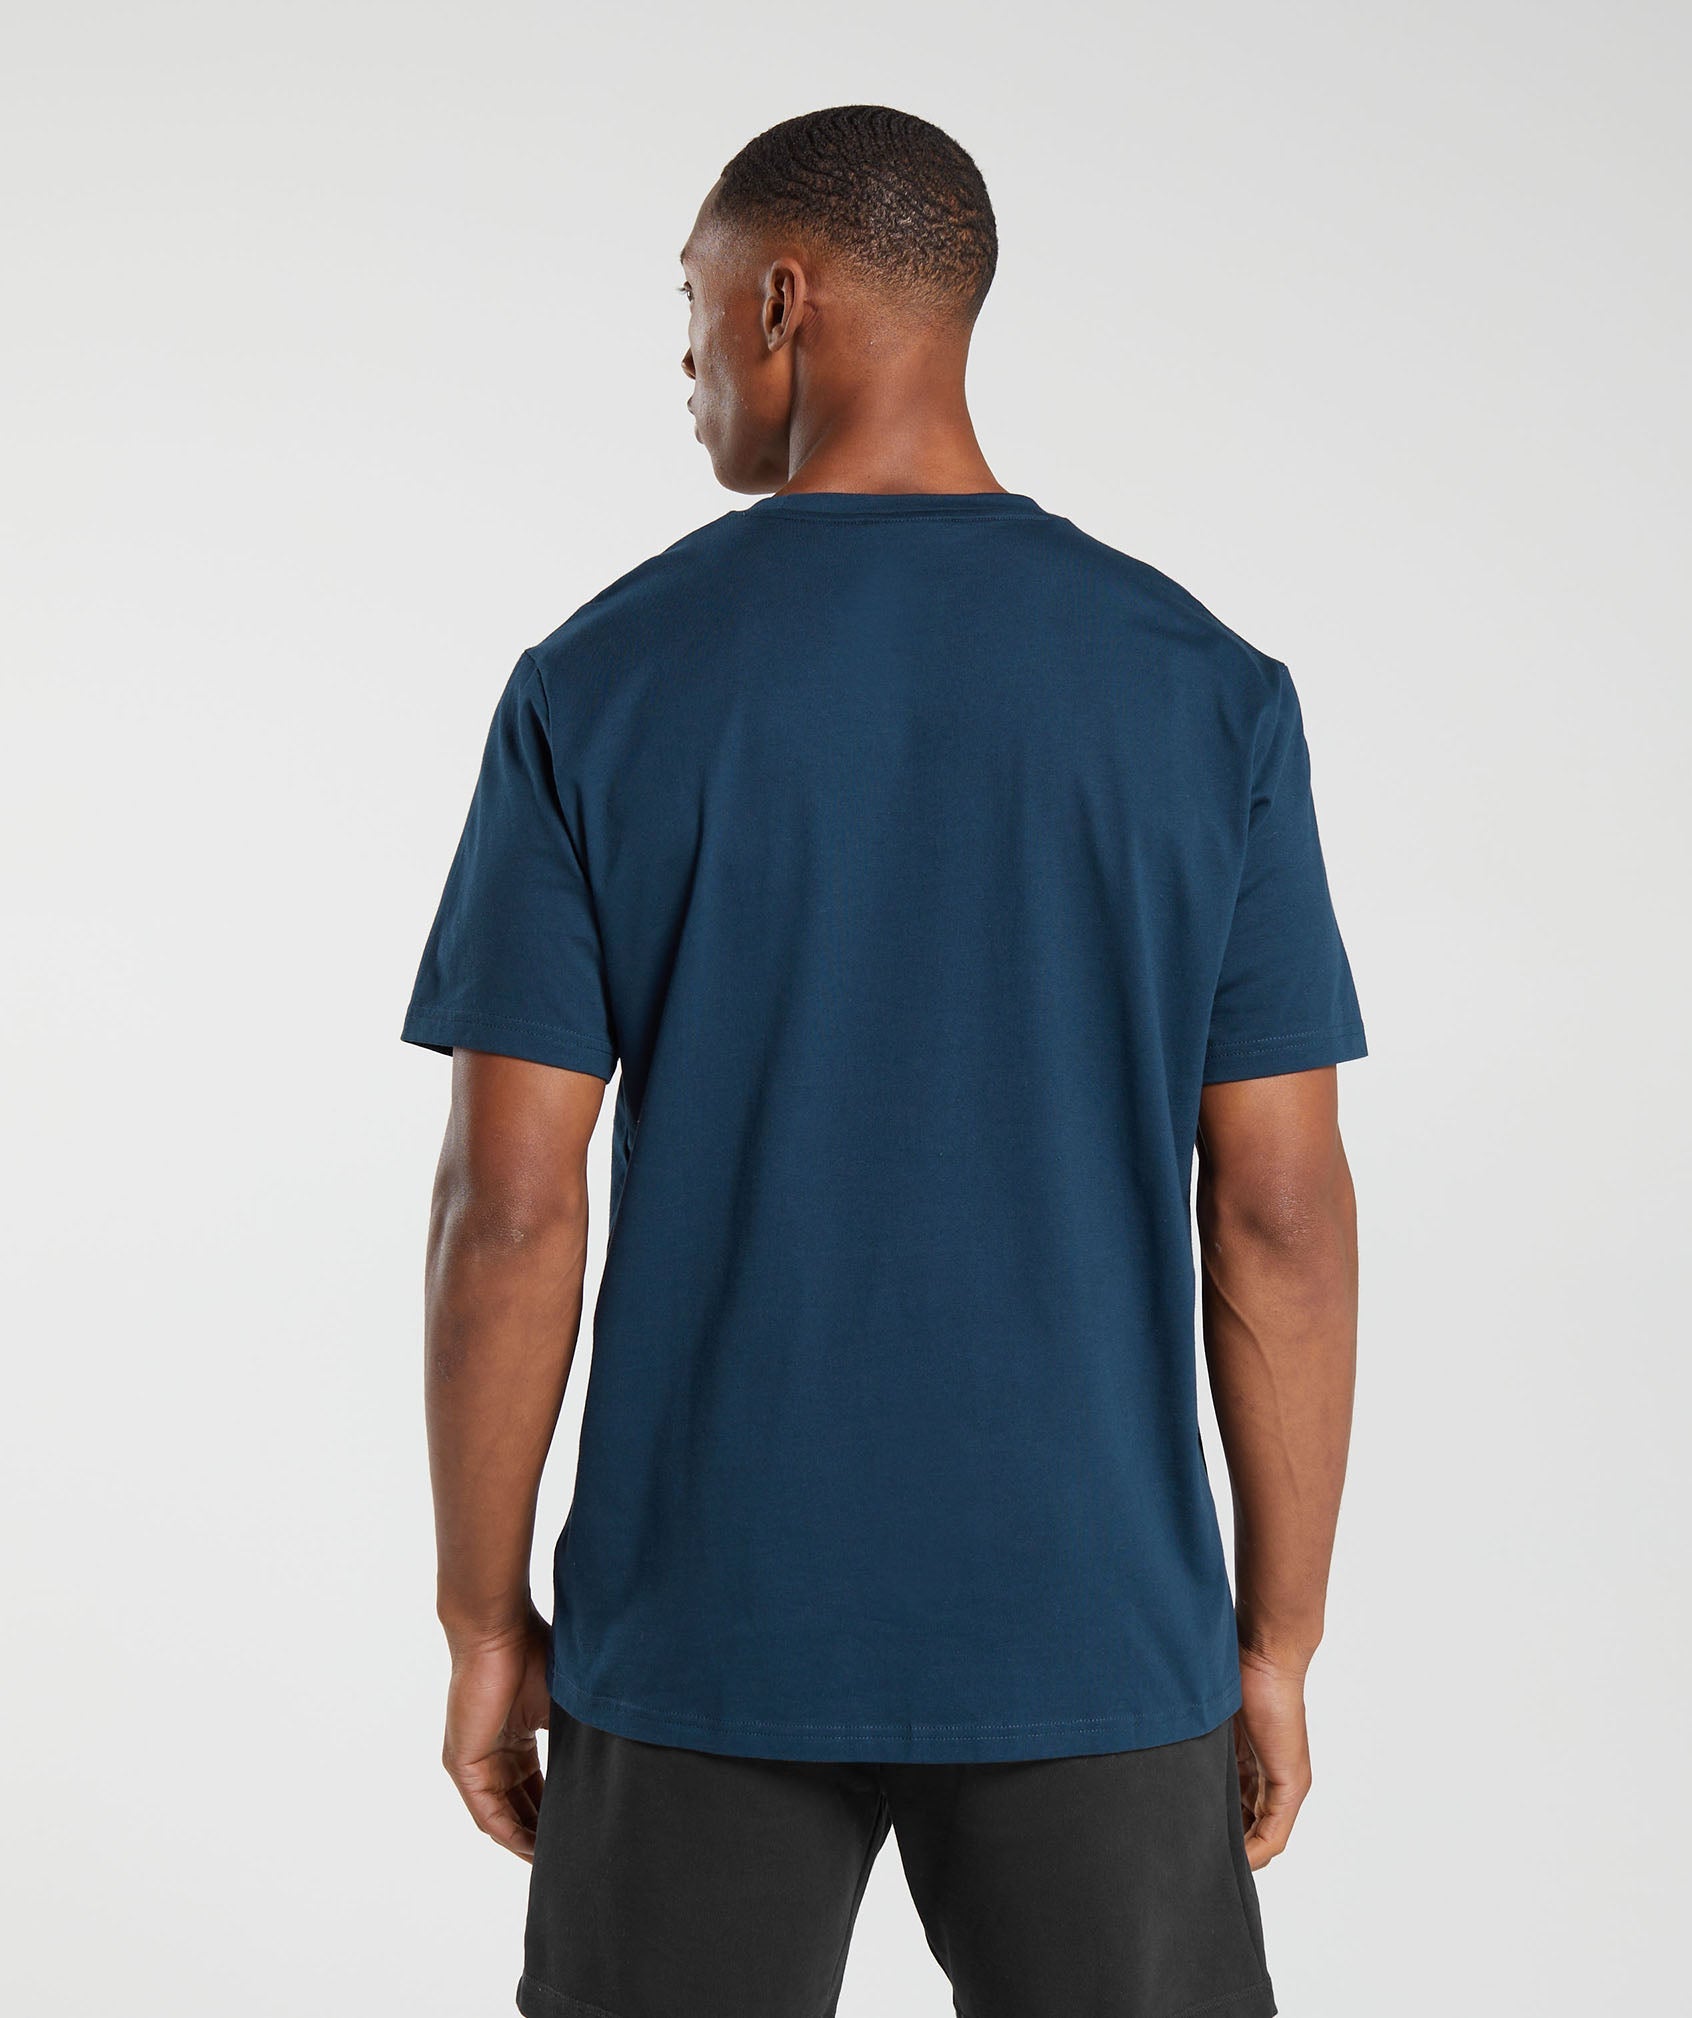 GYMSHARK Arrival Slim Black T-shirt for Men